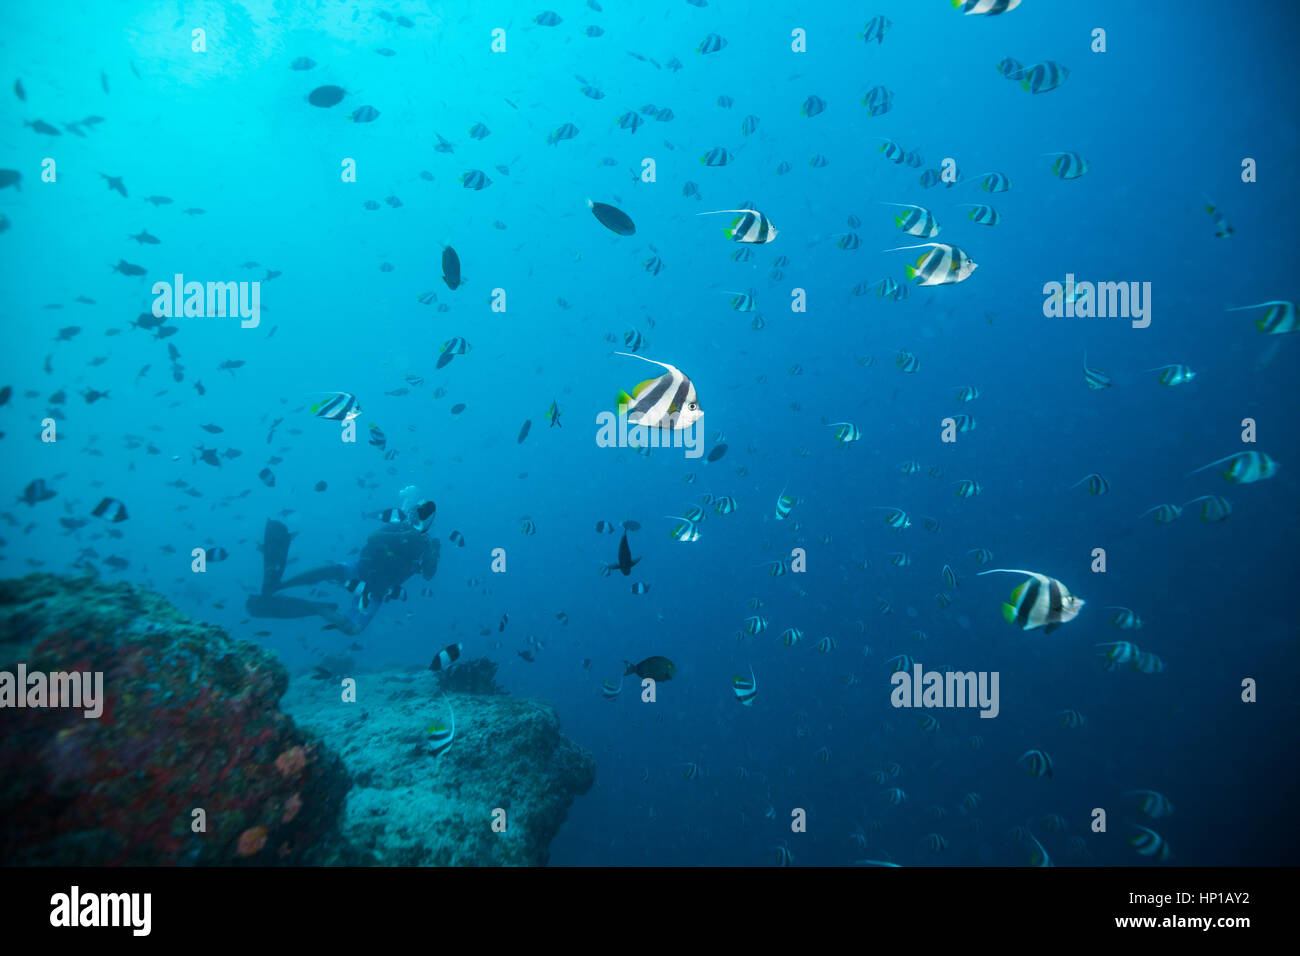 Troupeau de poissons chauve-souris flottant dans l'océan bleu profond, silhouettes de petits poissons de fond sur Banque D'Images